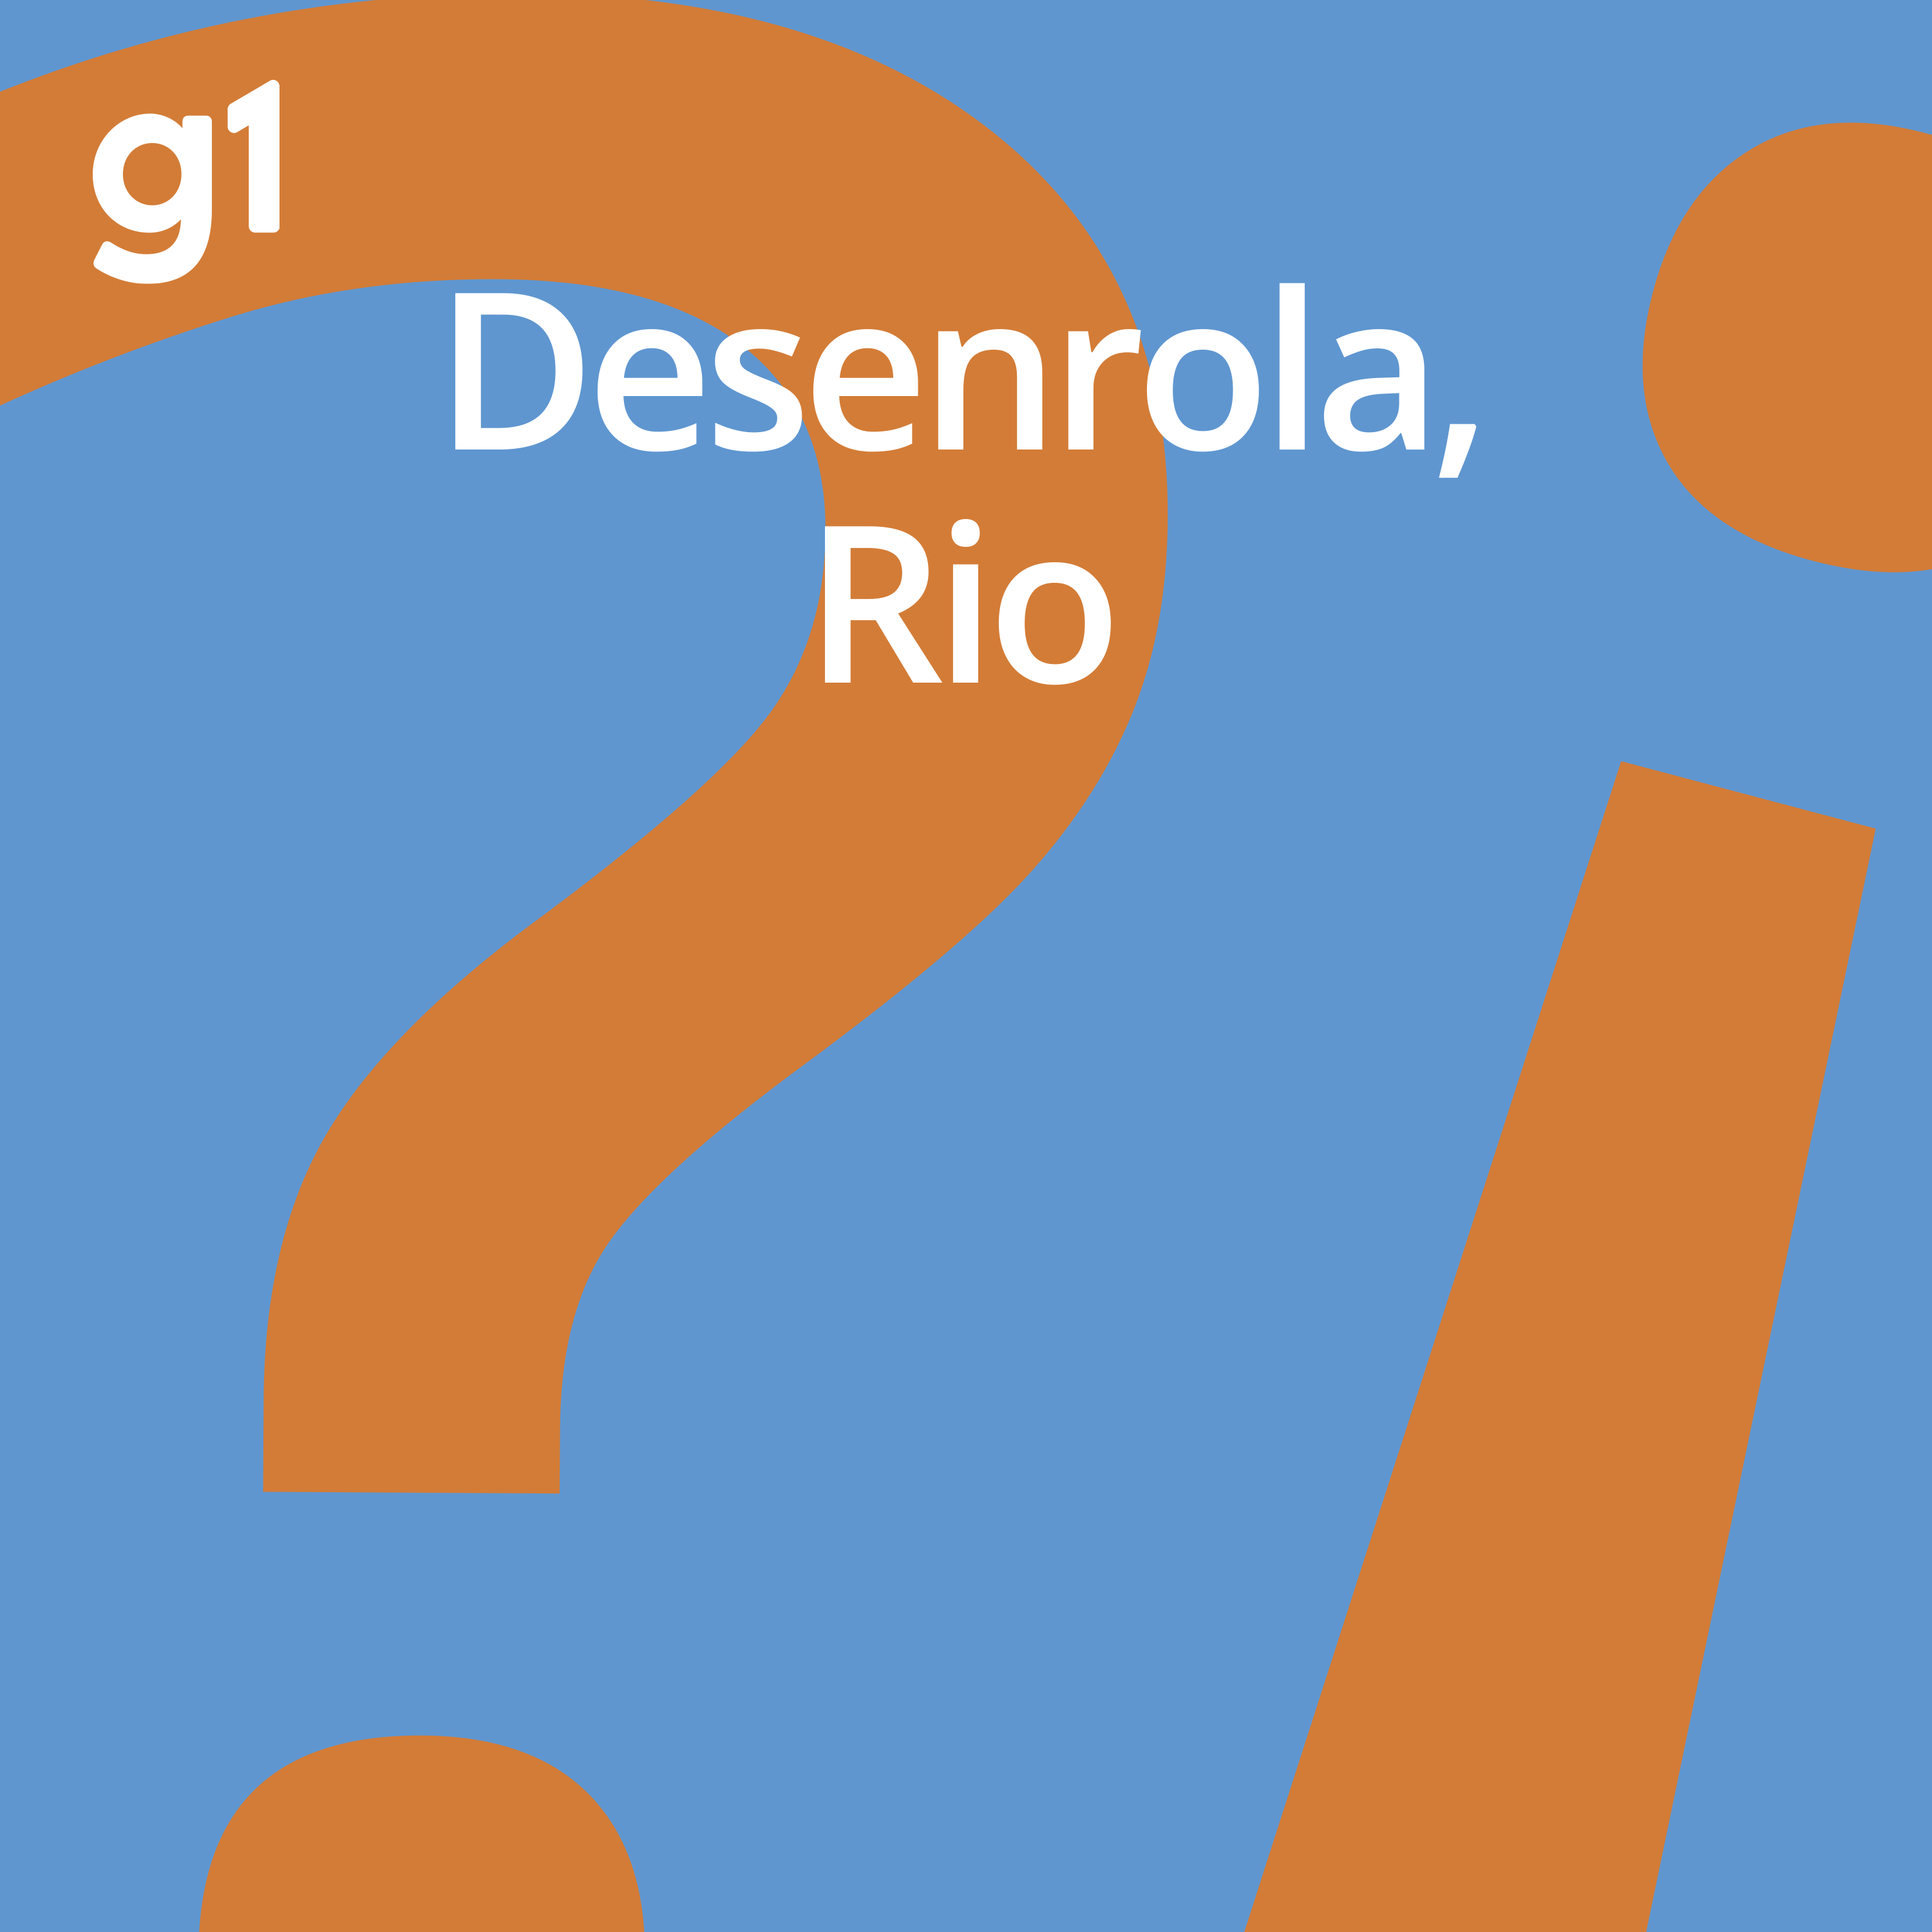 Desenrola, Rio